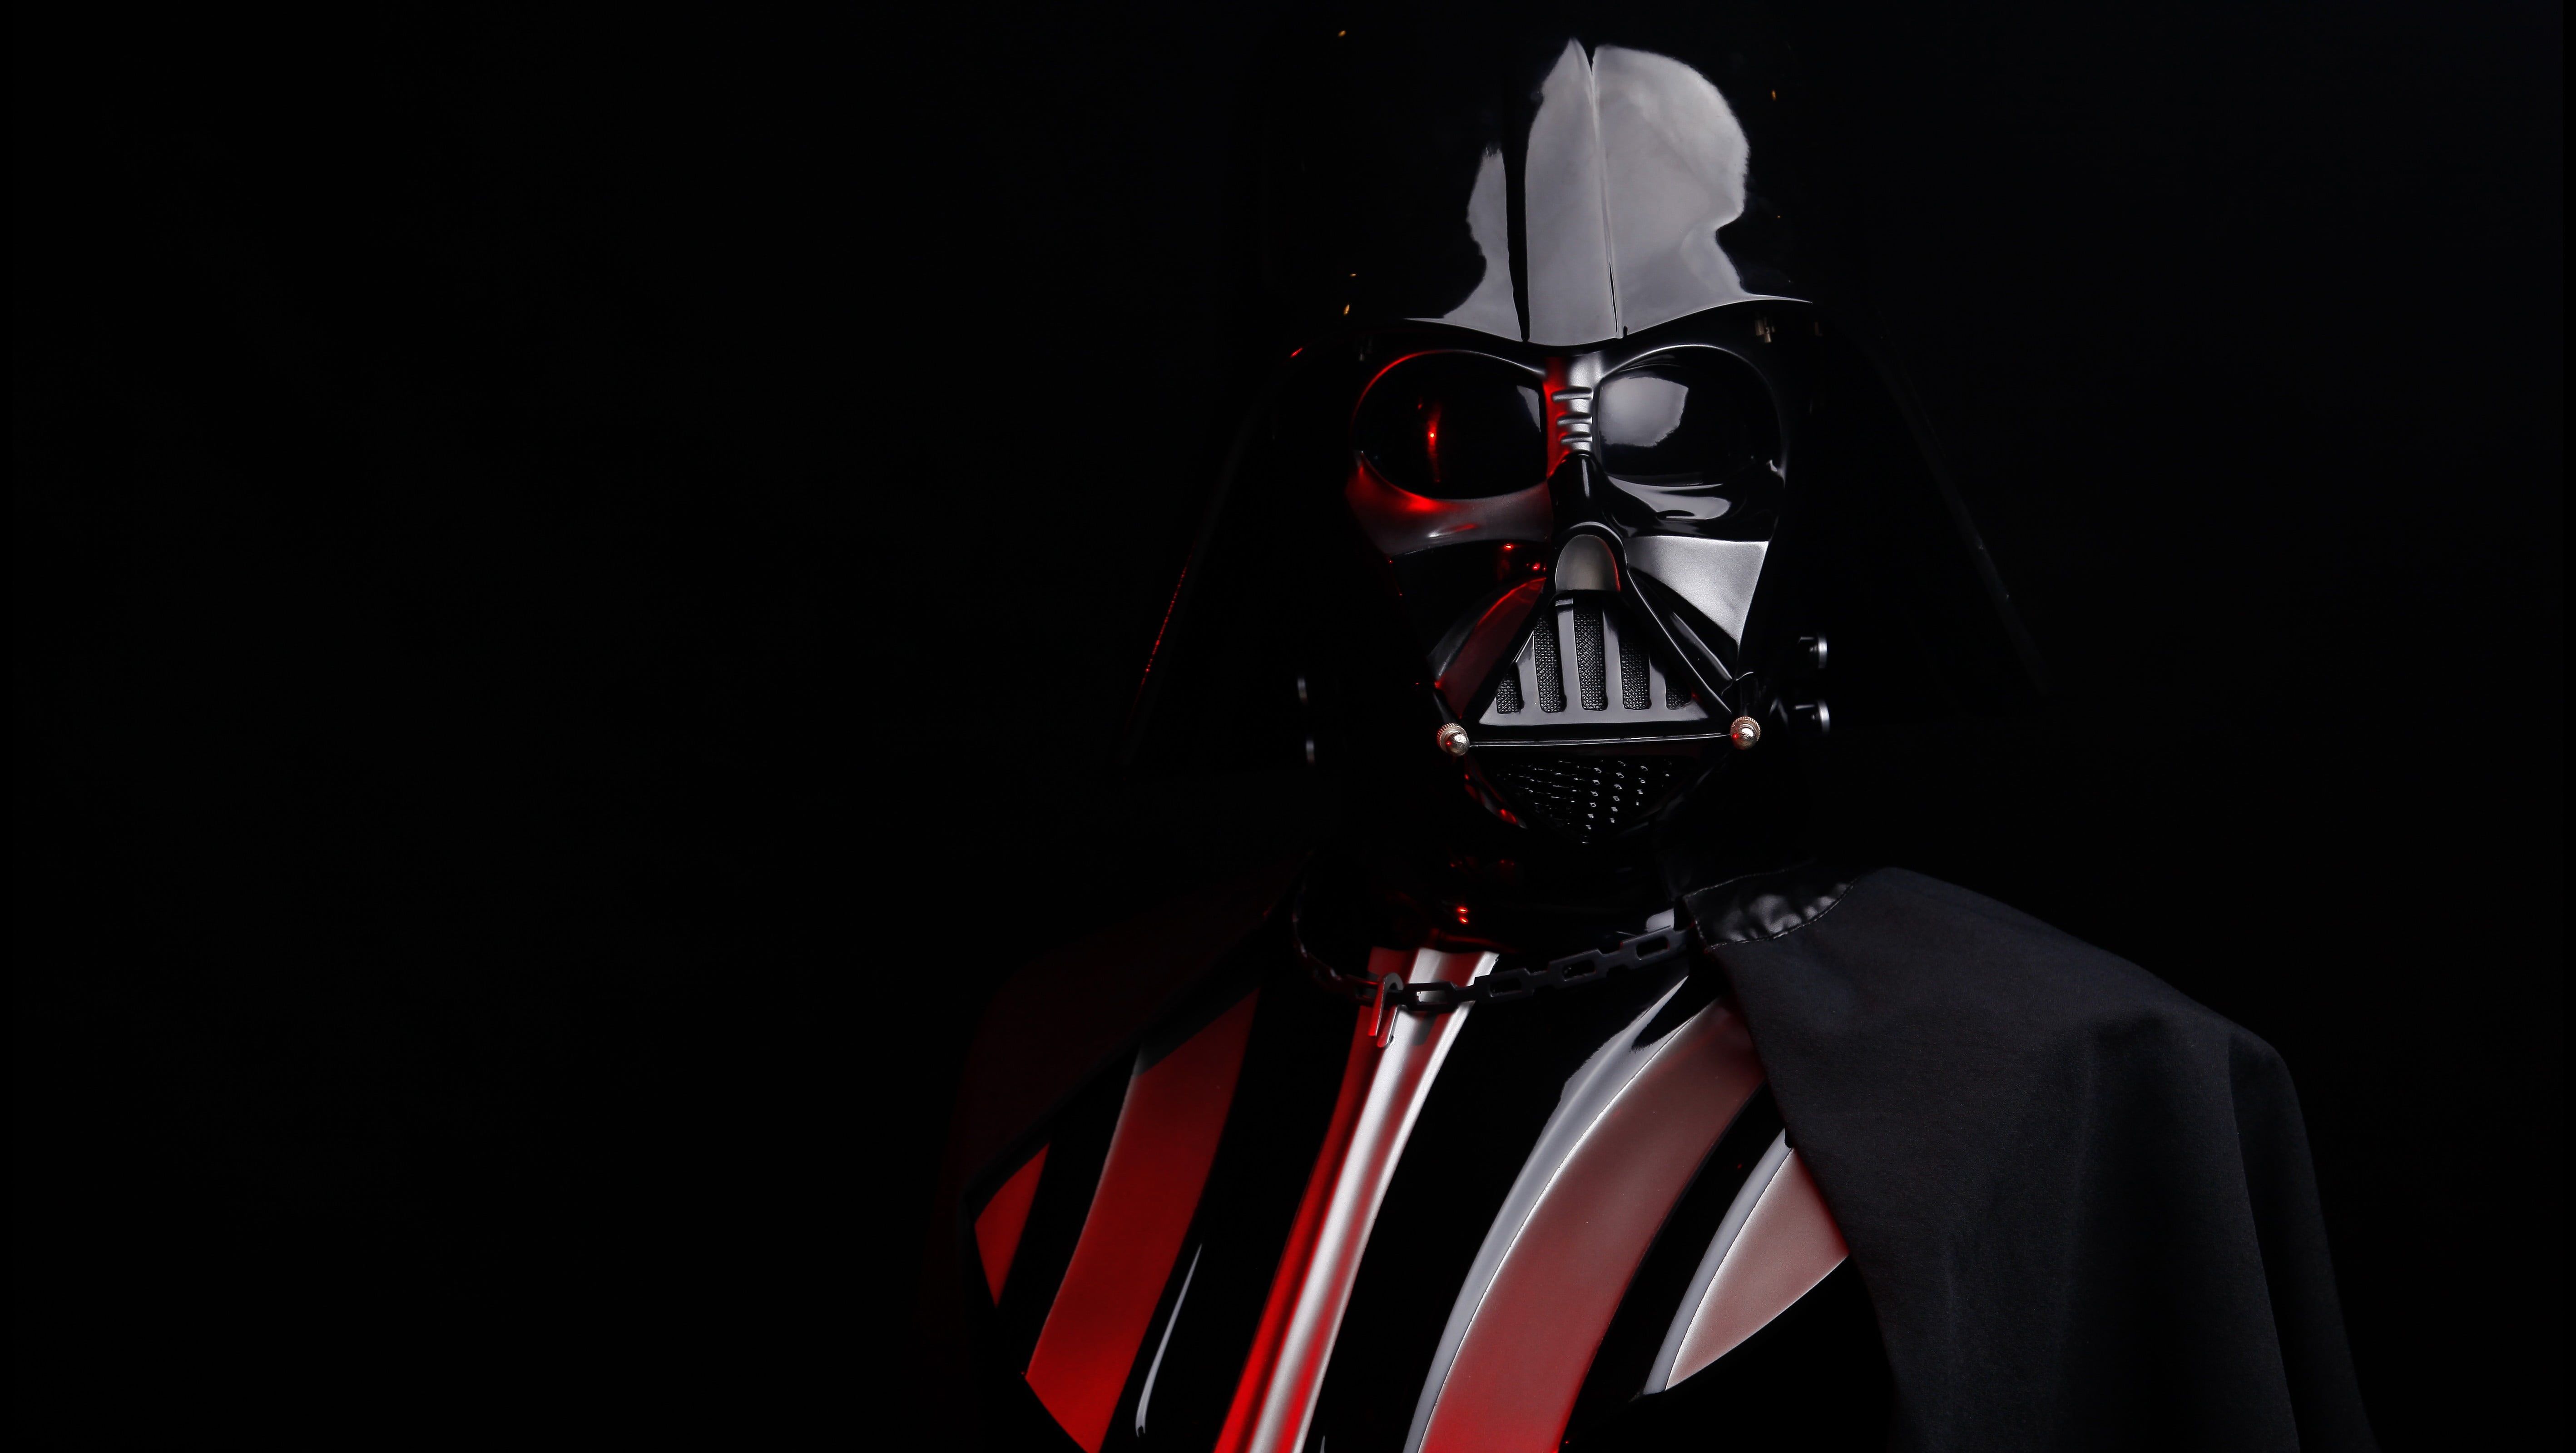 Darth Vader Star Wars Darth Vader #Sith K #wallpaper #hdwallpaper #desktop. Darth vader wallpaper, Star wars wallpaper, Vader star wars